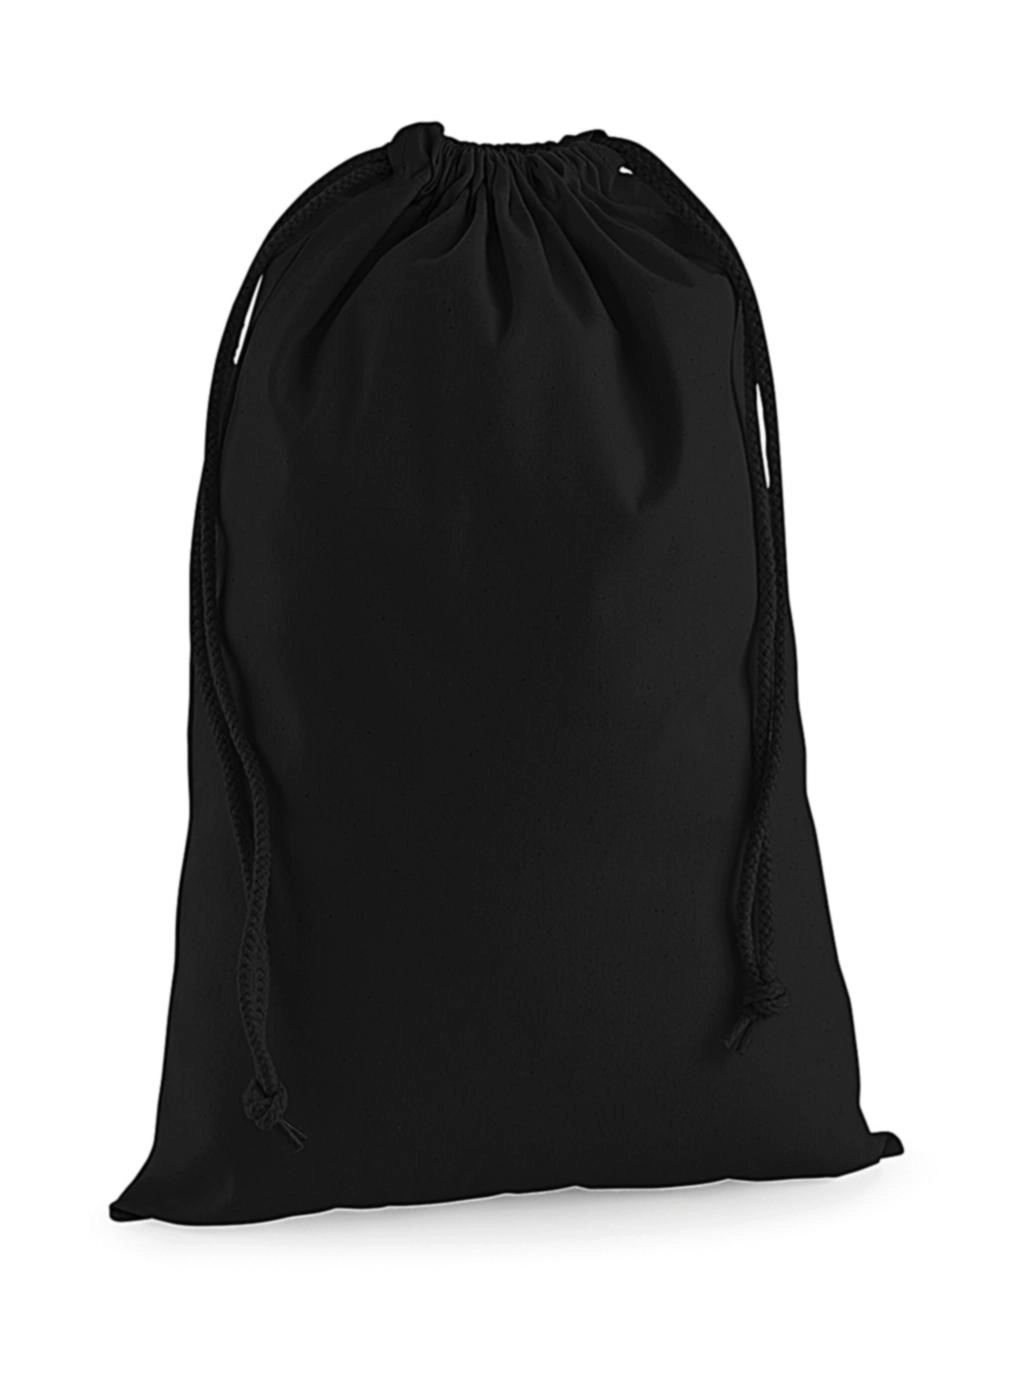 Premium Cotton Stuff Bag zum Besticken und Bedrucken in der Farbe Black mit Ihren Logo, Schriftzug oder Motiv.